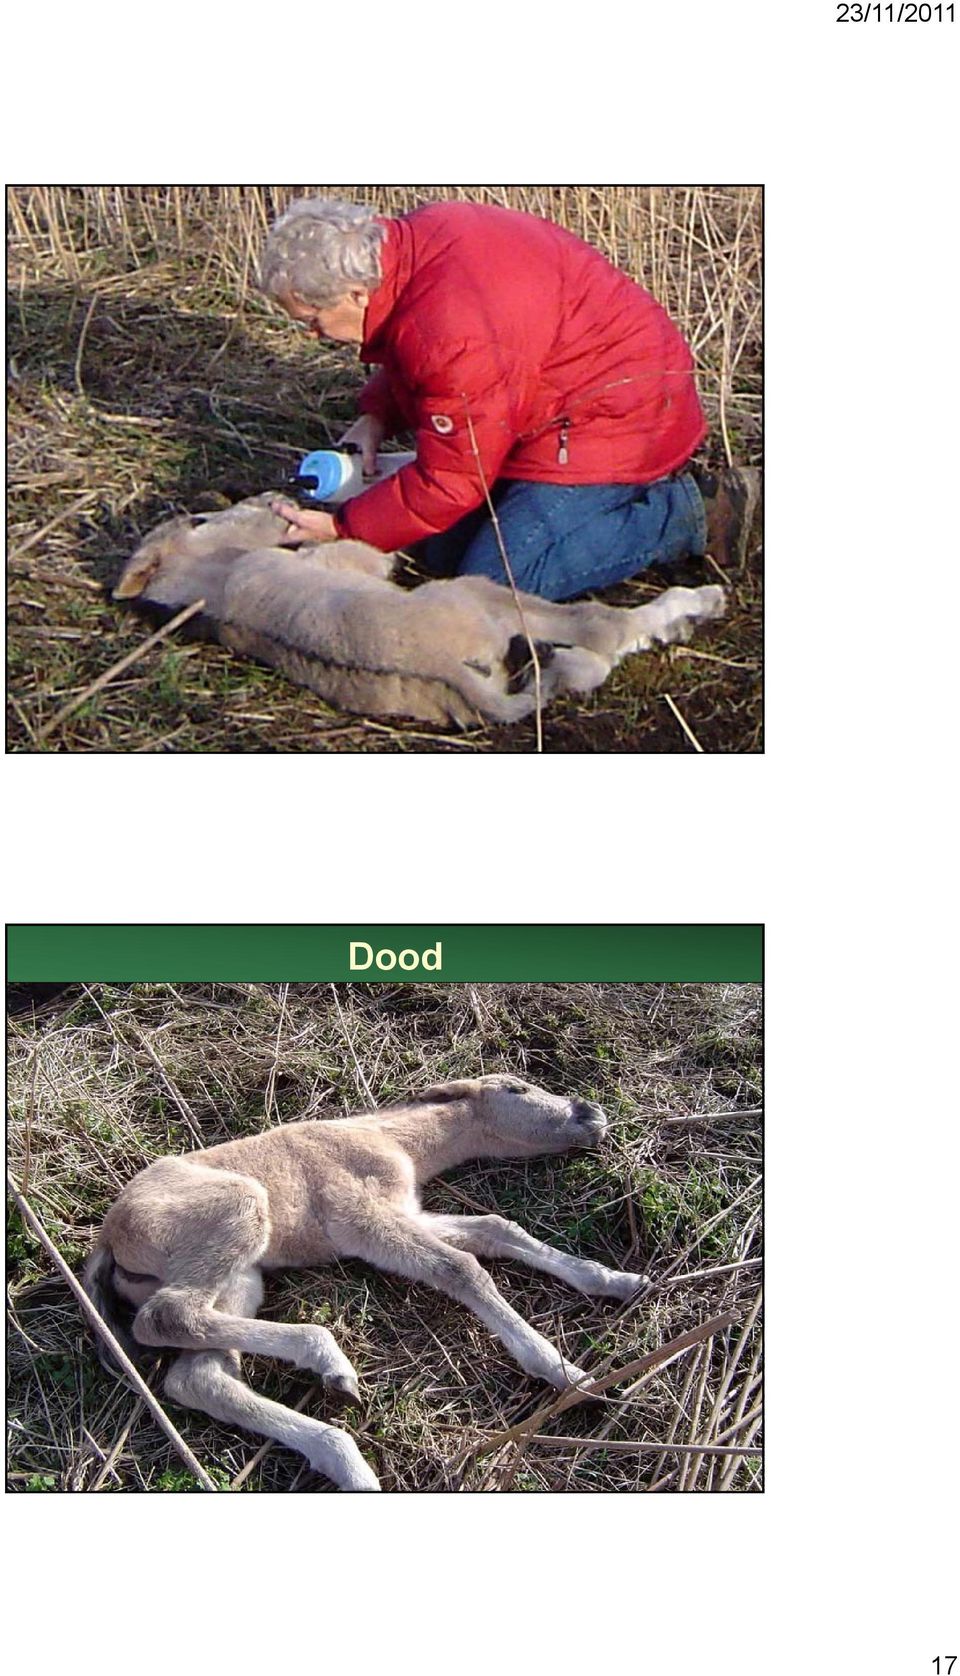 Dood - Zorgen voor genetisch sterke kudde - beheerder haalt zwakke dieren eruit (wolf) - Zorgen voor sociaal sterke kudde - goede terrein kennis / plantenkennis - dieren 